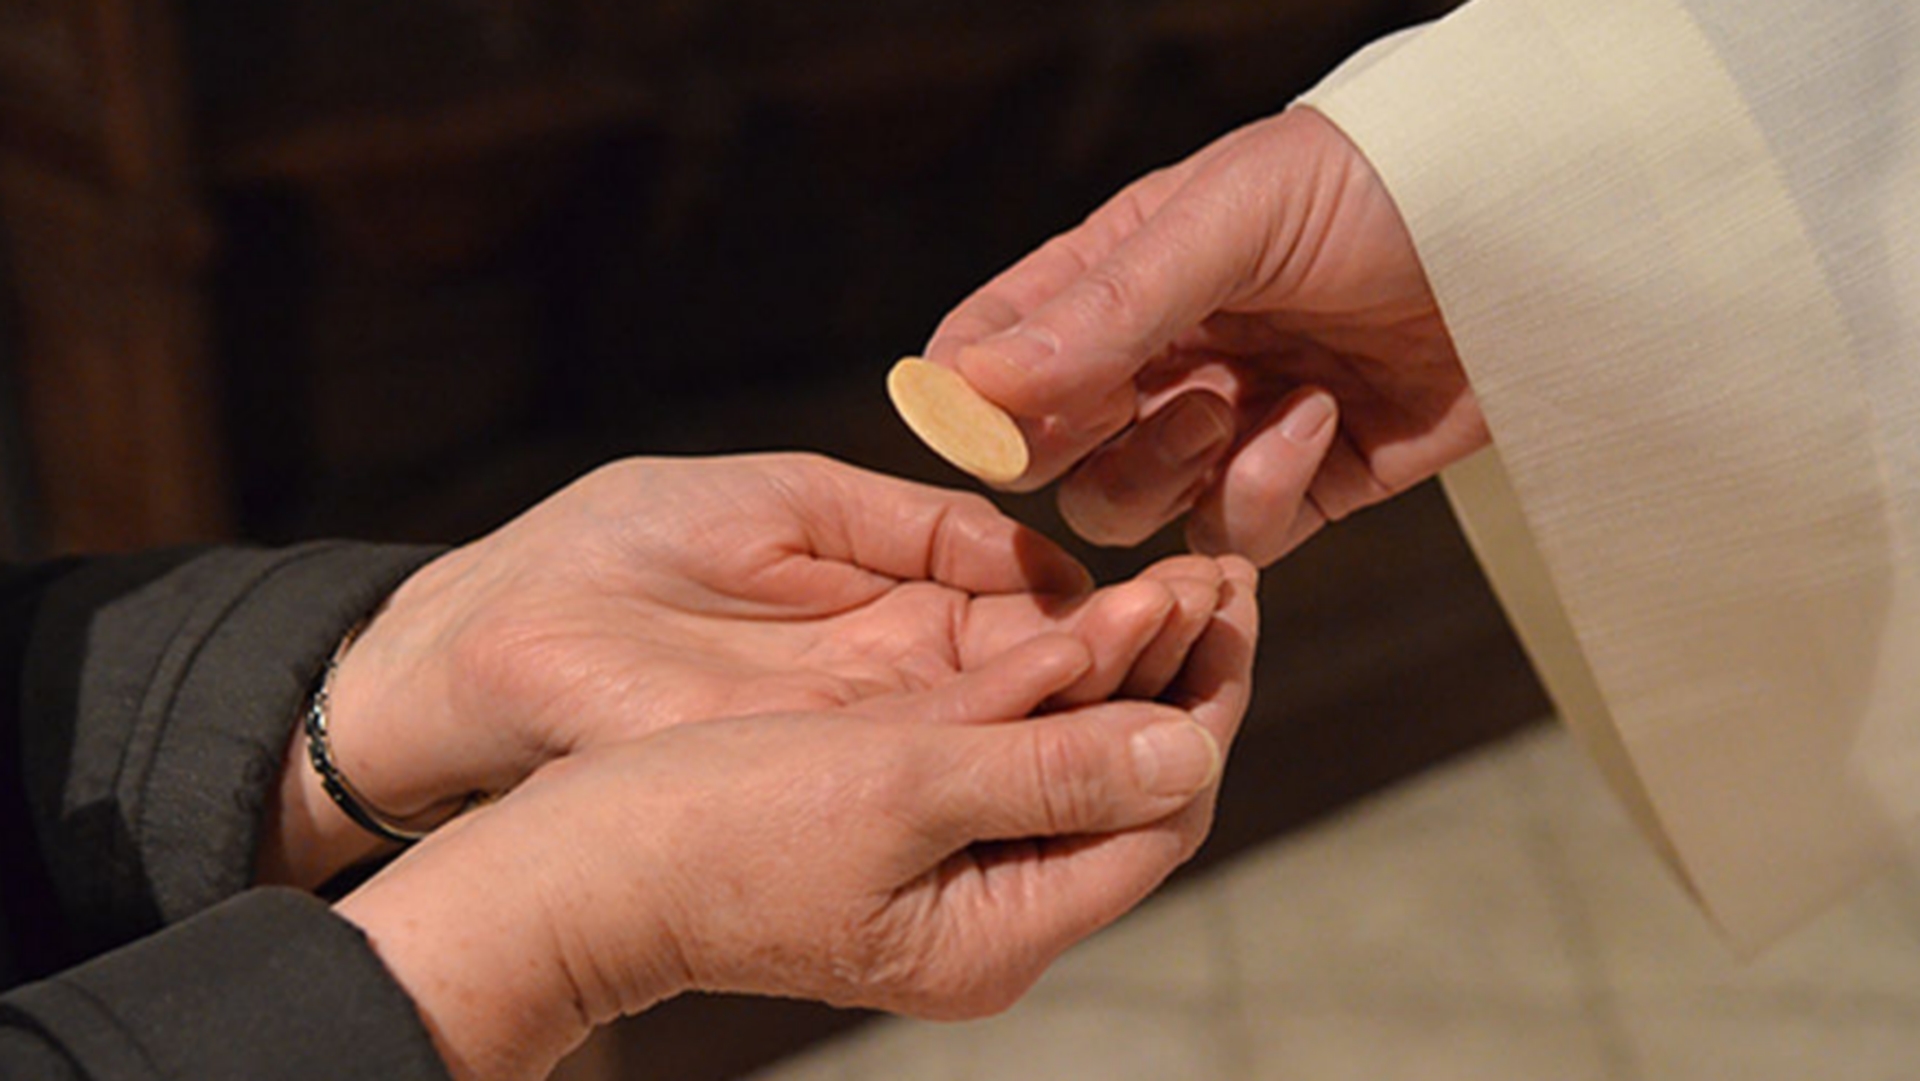 Mise en garde contre la «militarisation de l'Eucharistie» (Mgr Robert W. McElroy) Communion-main